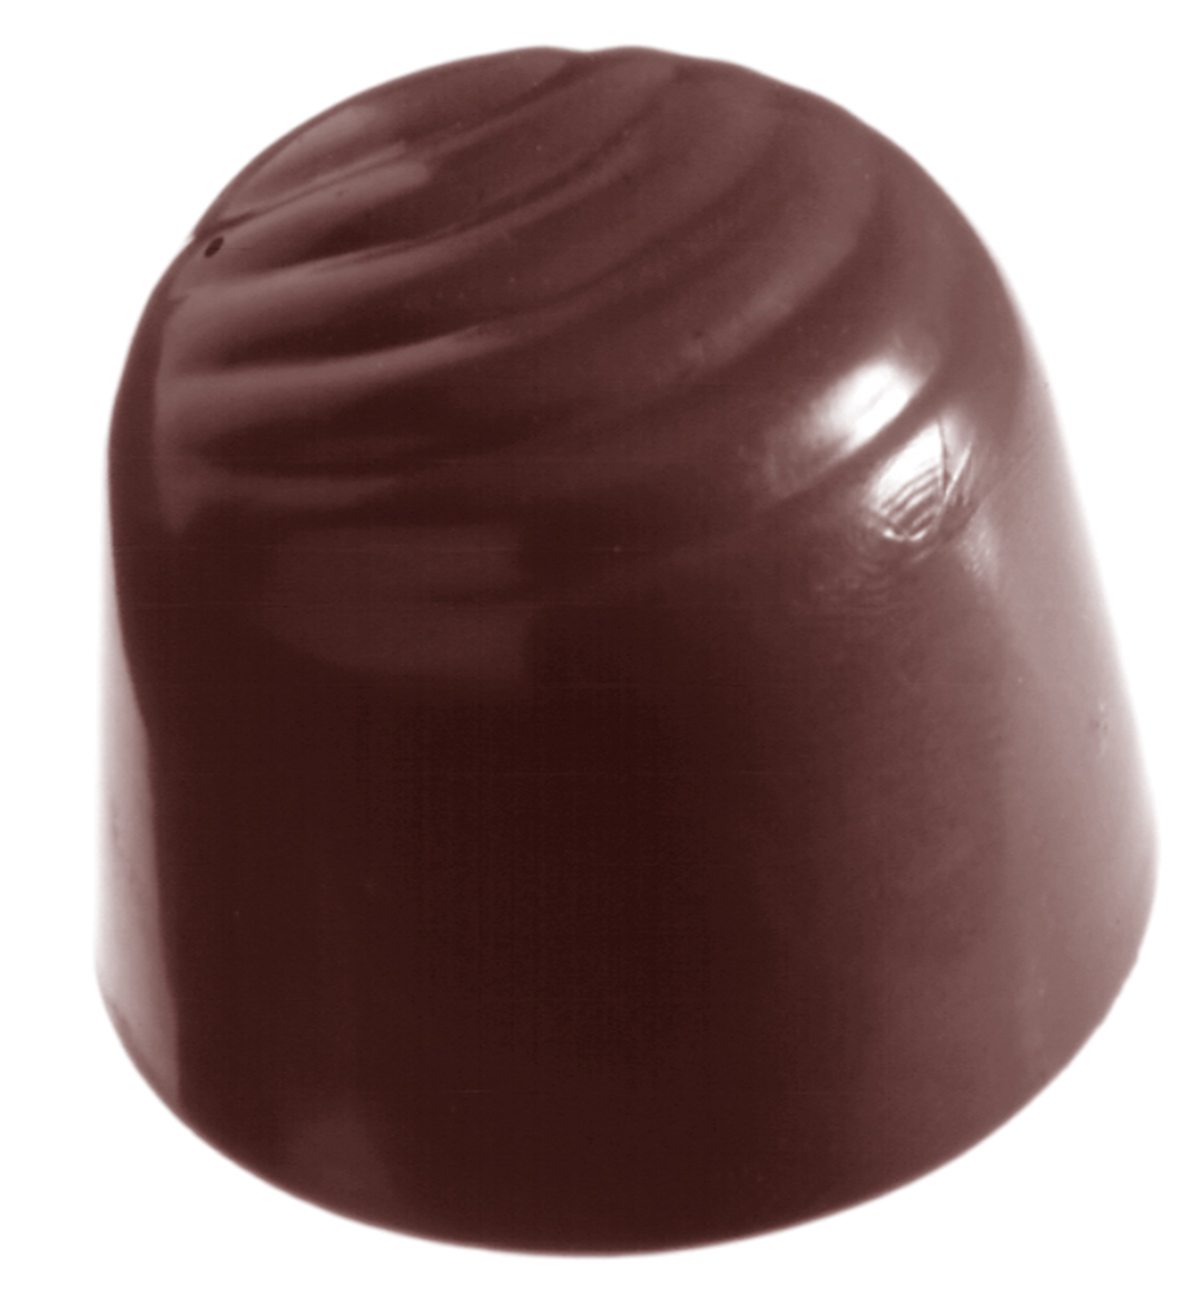 Billede af Professionel chokoladeform i polycarbonat - Cherry Small CW1081